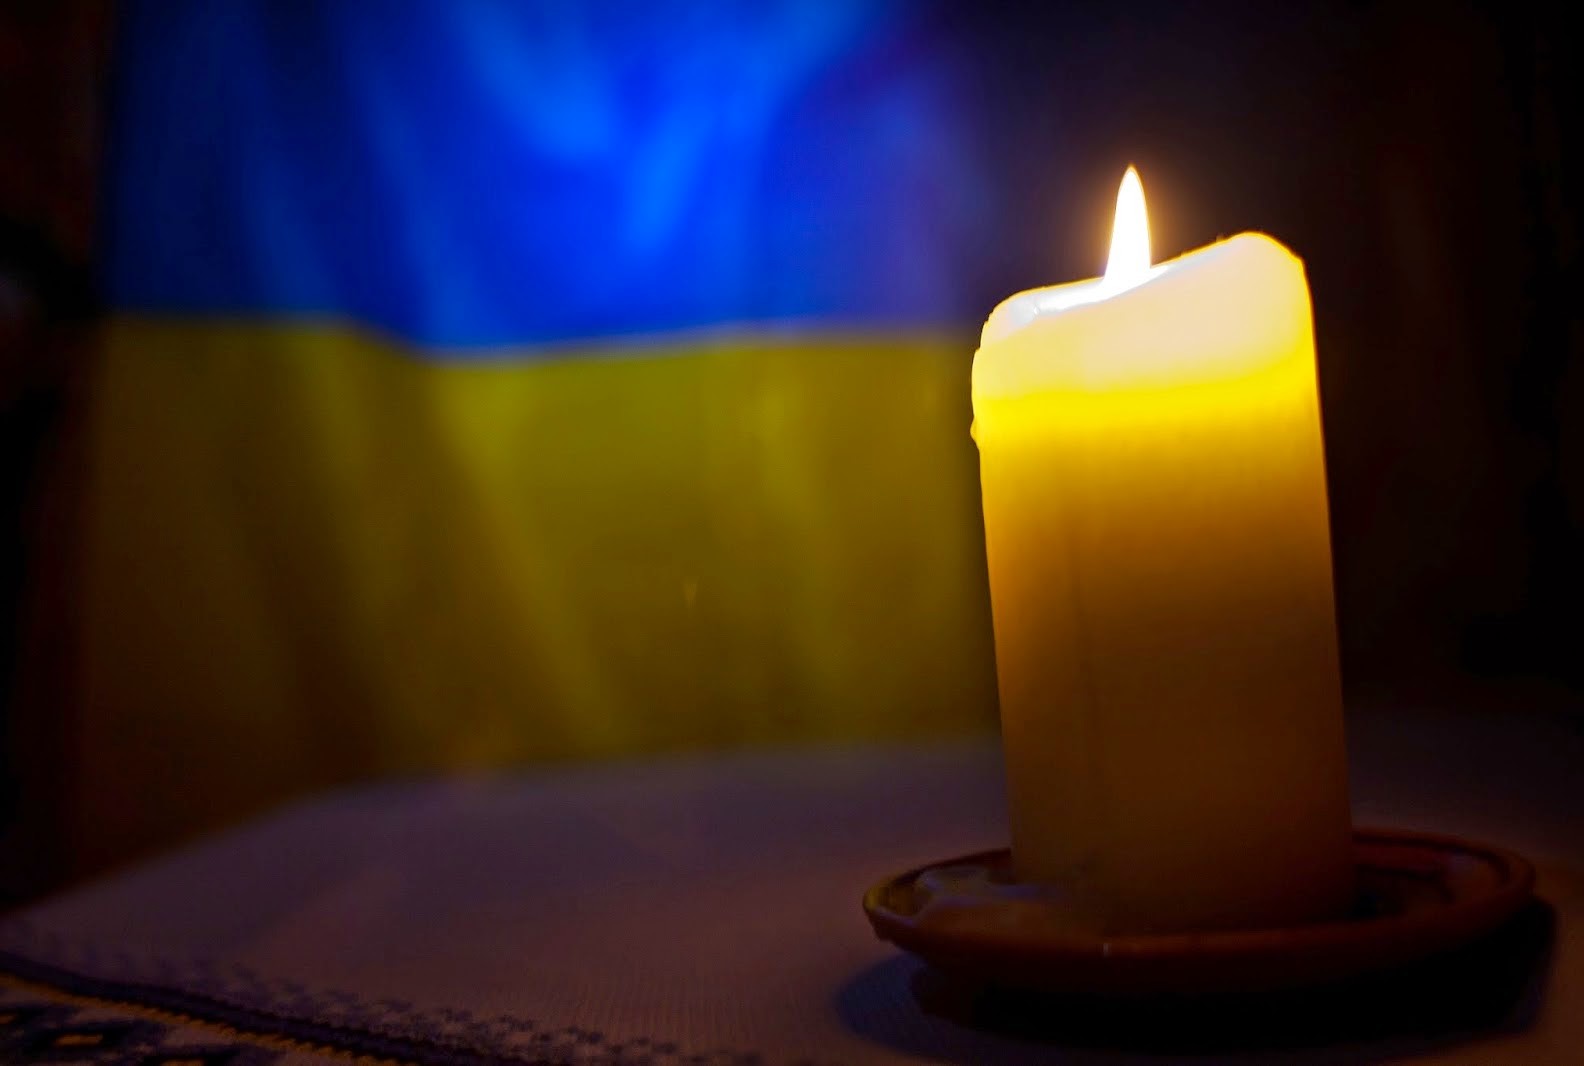 Вшануймо пам'ять загиблих військовослужбовців Десантно-штурмових військ Збройних Сил України!